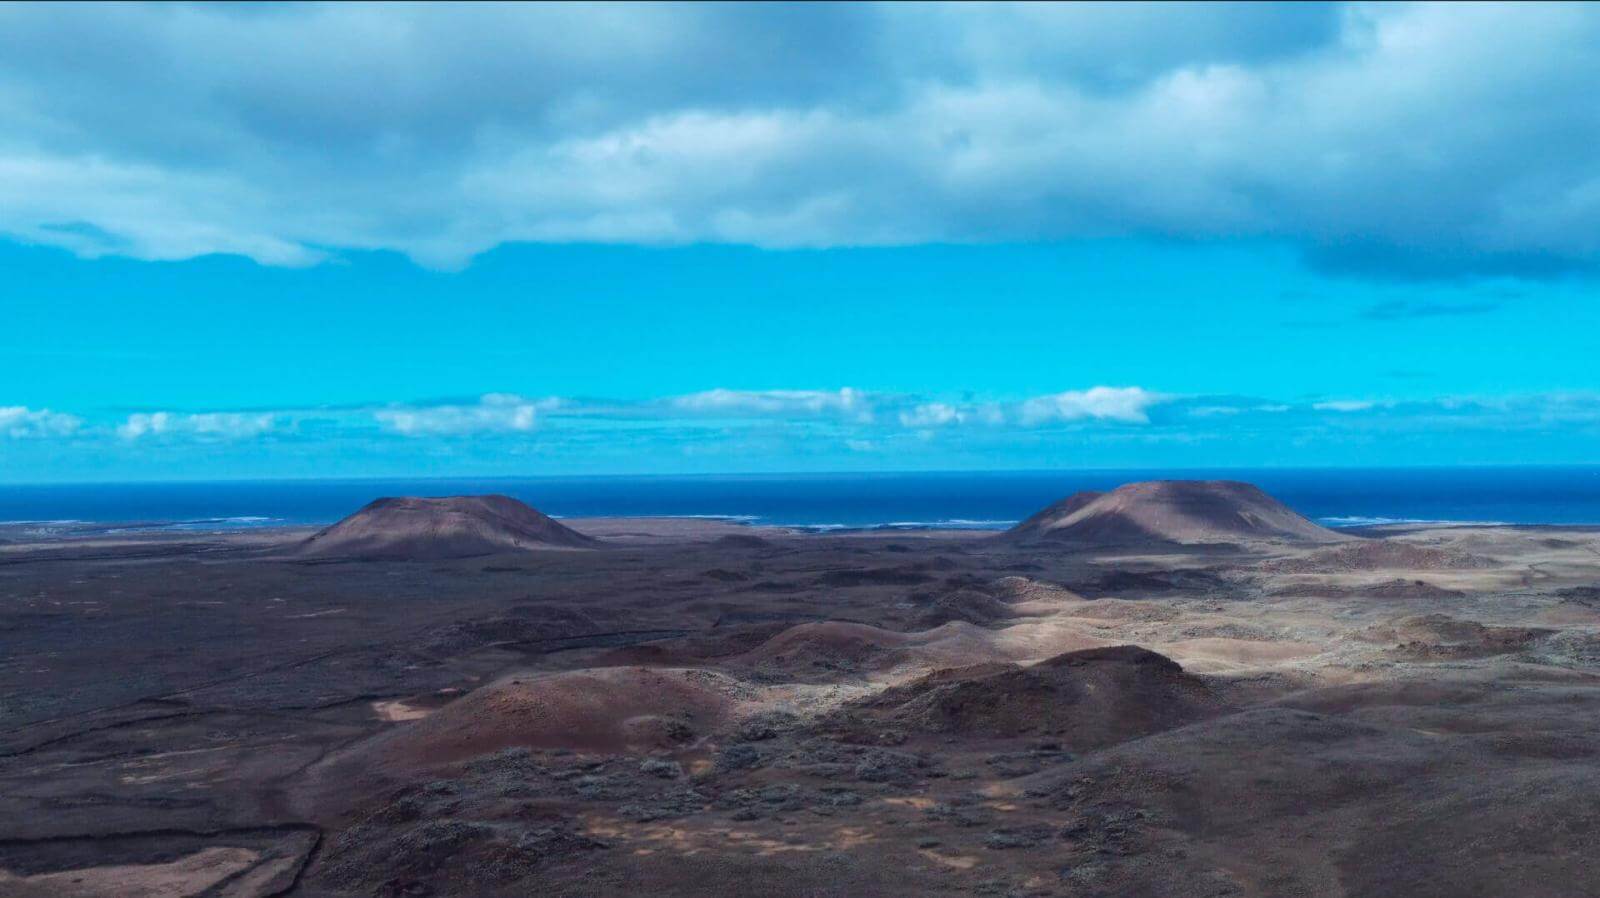 Volcán de Bayuyo - Fuerteventura